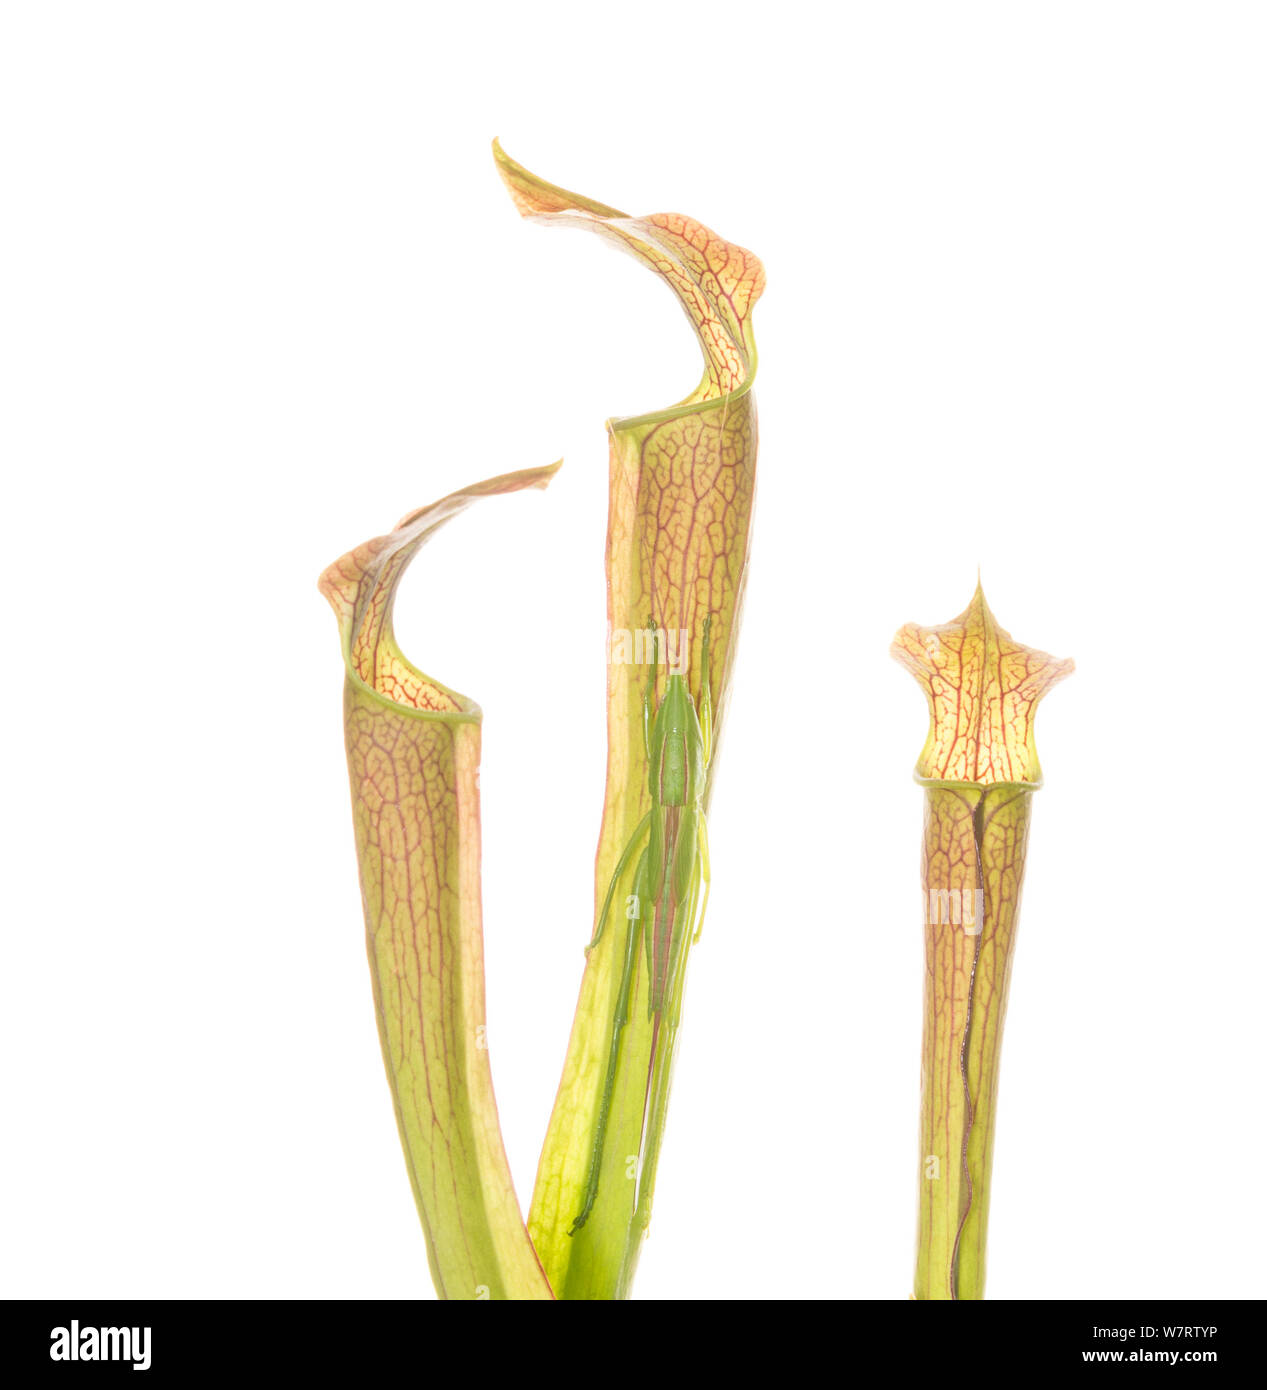 Pvi - insecte sur une espèce végétale en usine -la montagne, sweet sarracénie Sarracenia rubra (ssp. jonesii) se trouve dans les montagnes de la Caroline du Sud et Caroline du Nord. Cette plante a été photographié dans la préservation du patrimoine Chandler en Caroline du Sud. Banque D'Images